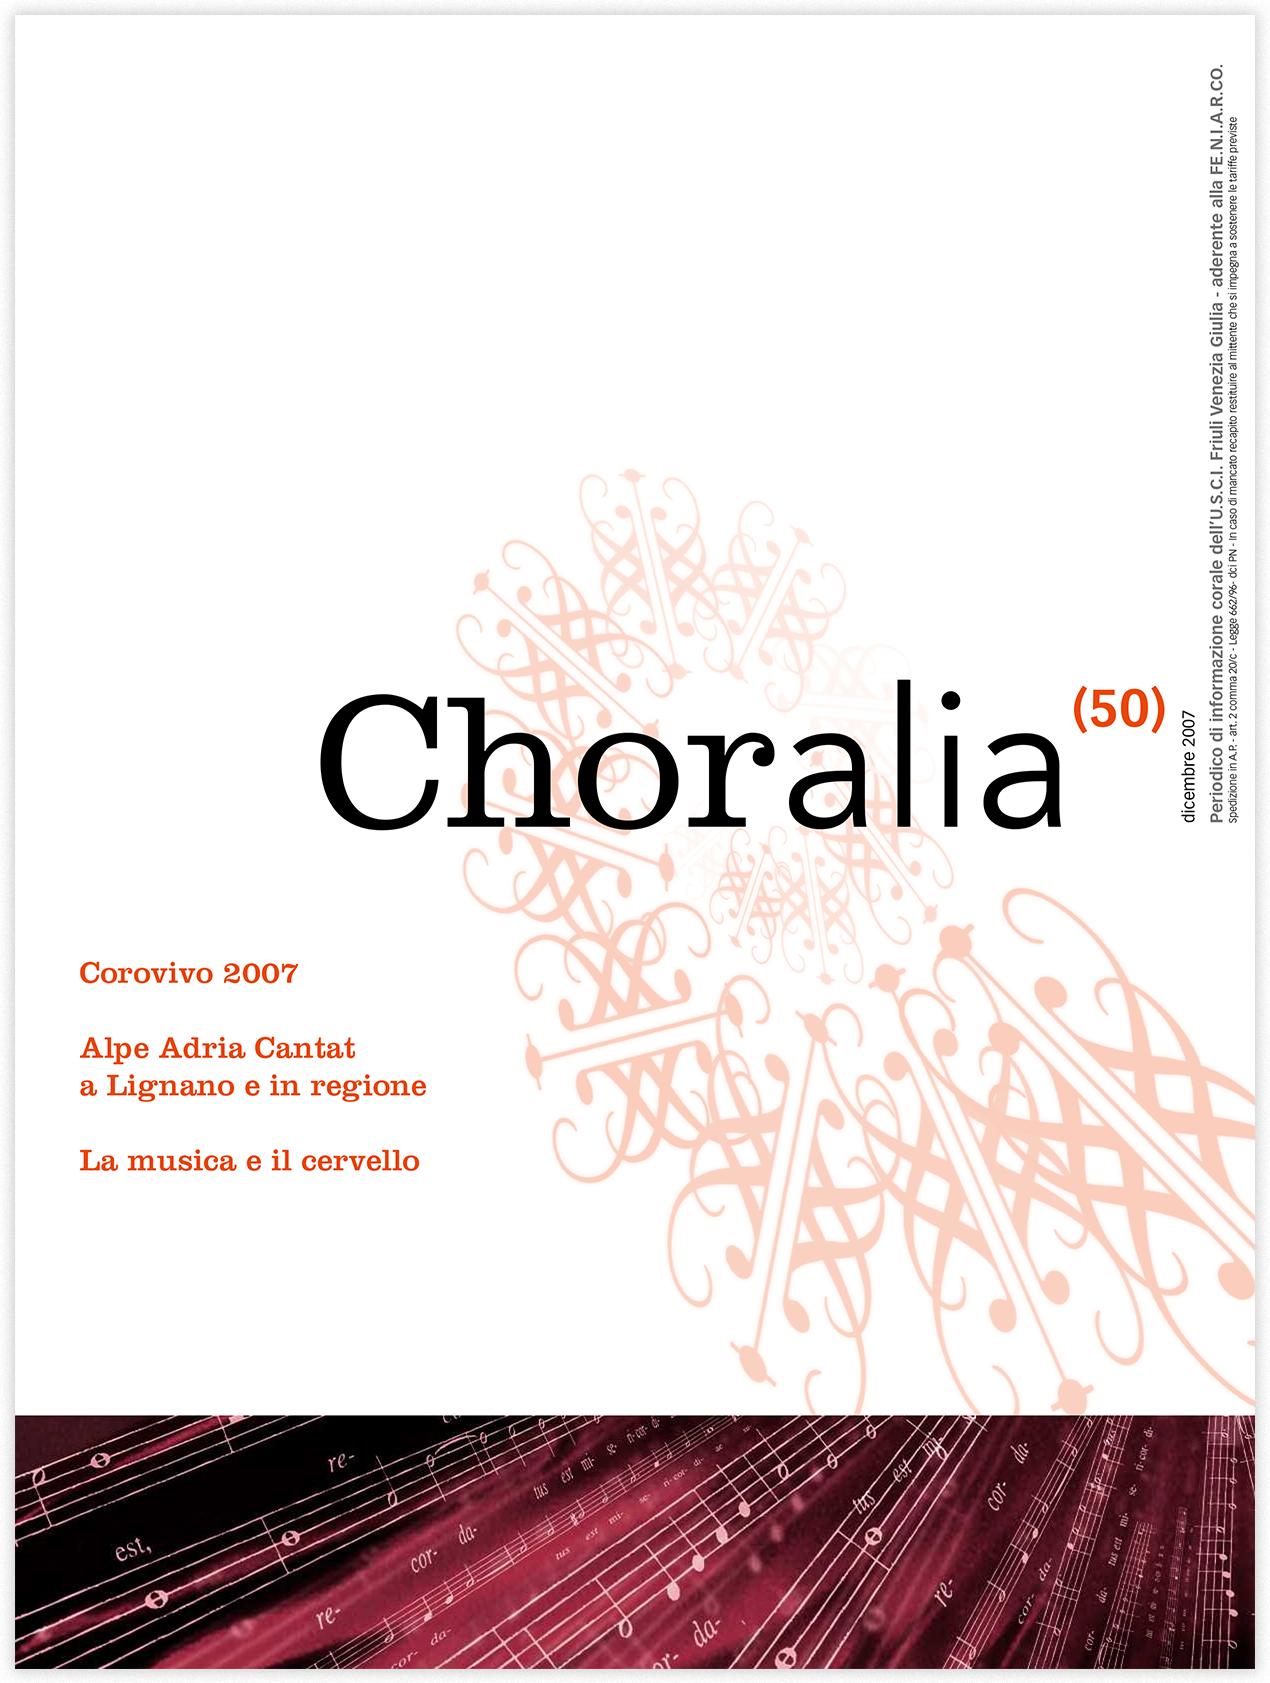 Choralia 50